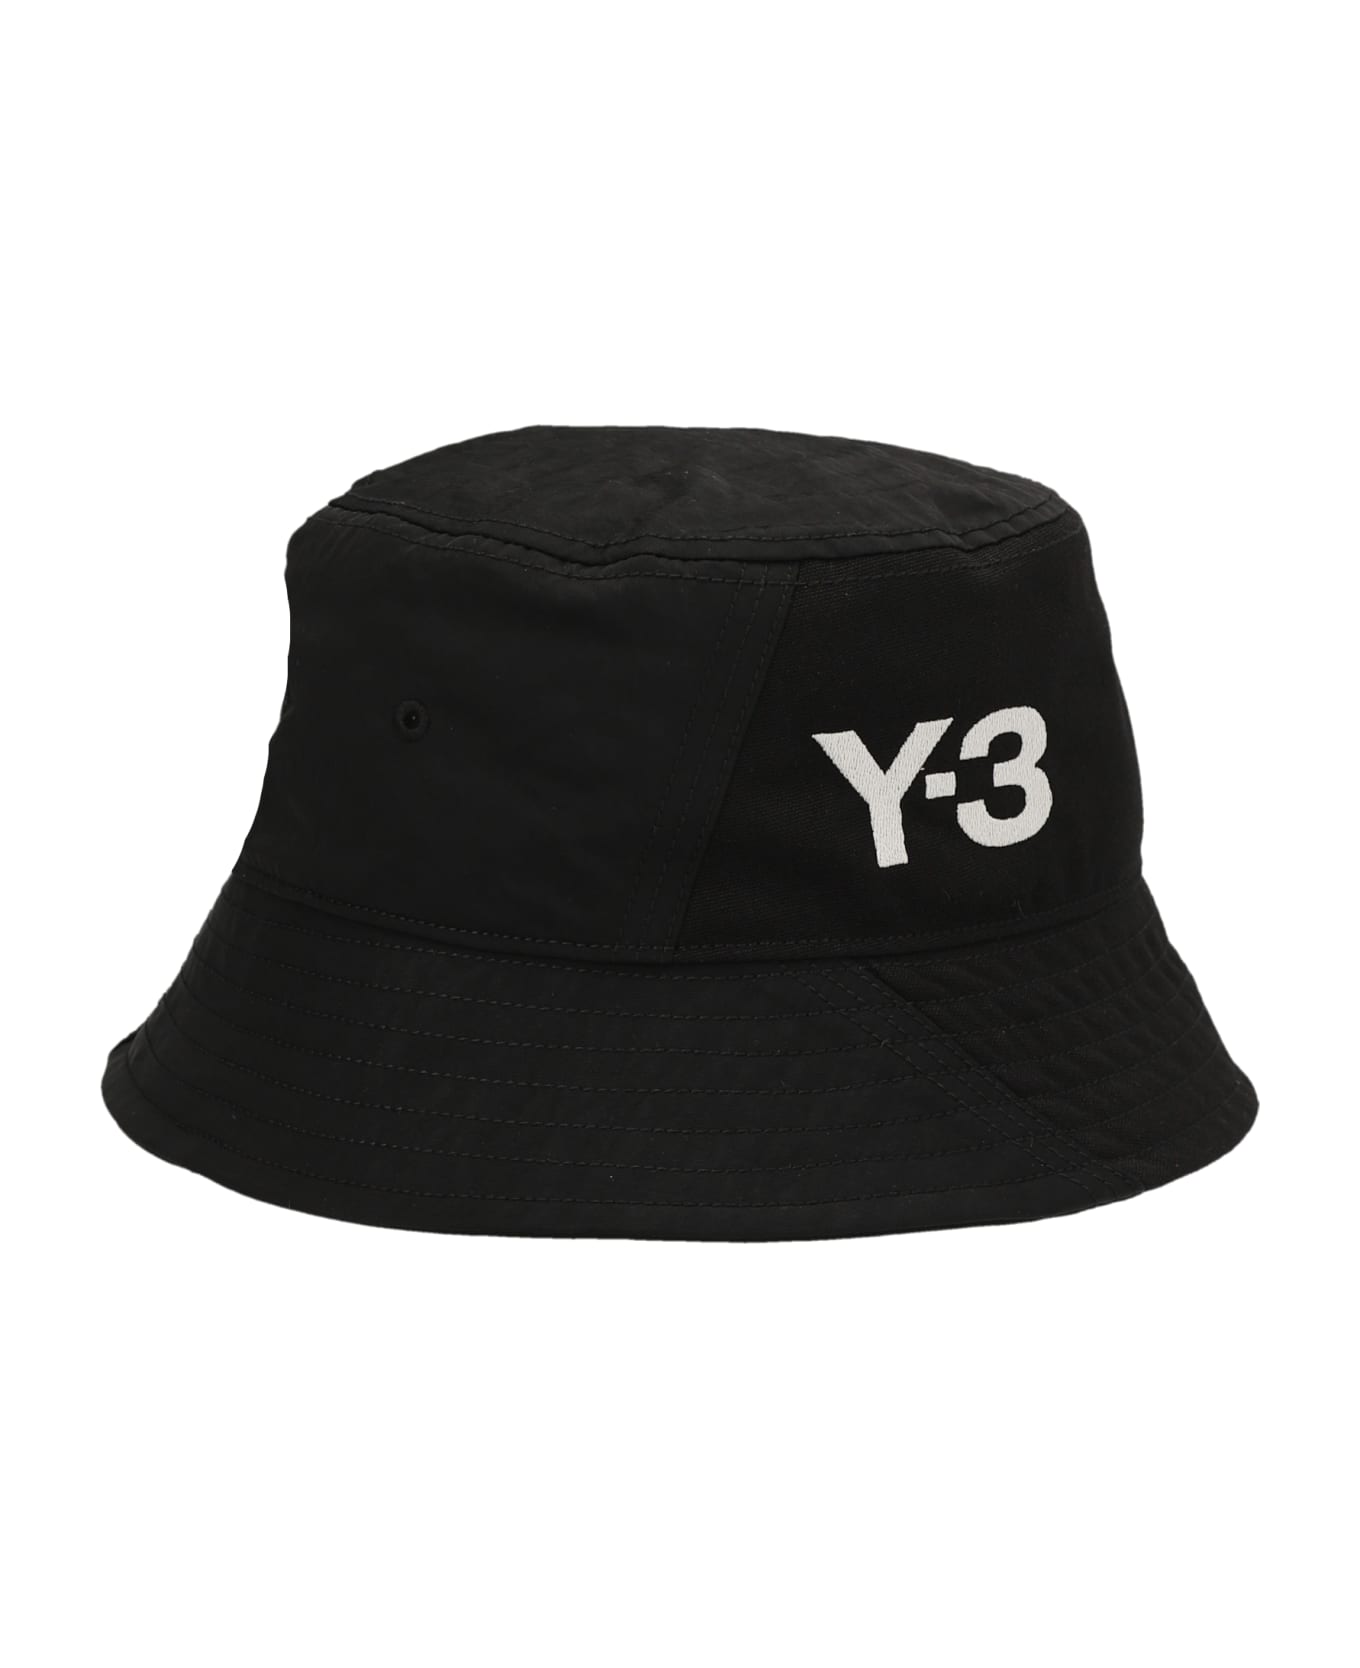 Y-3 'y-3' Bucket Hat - Black  